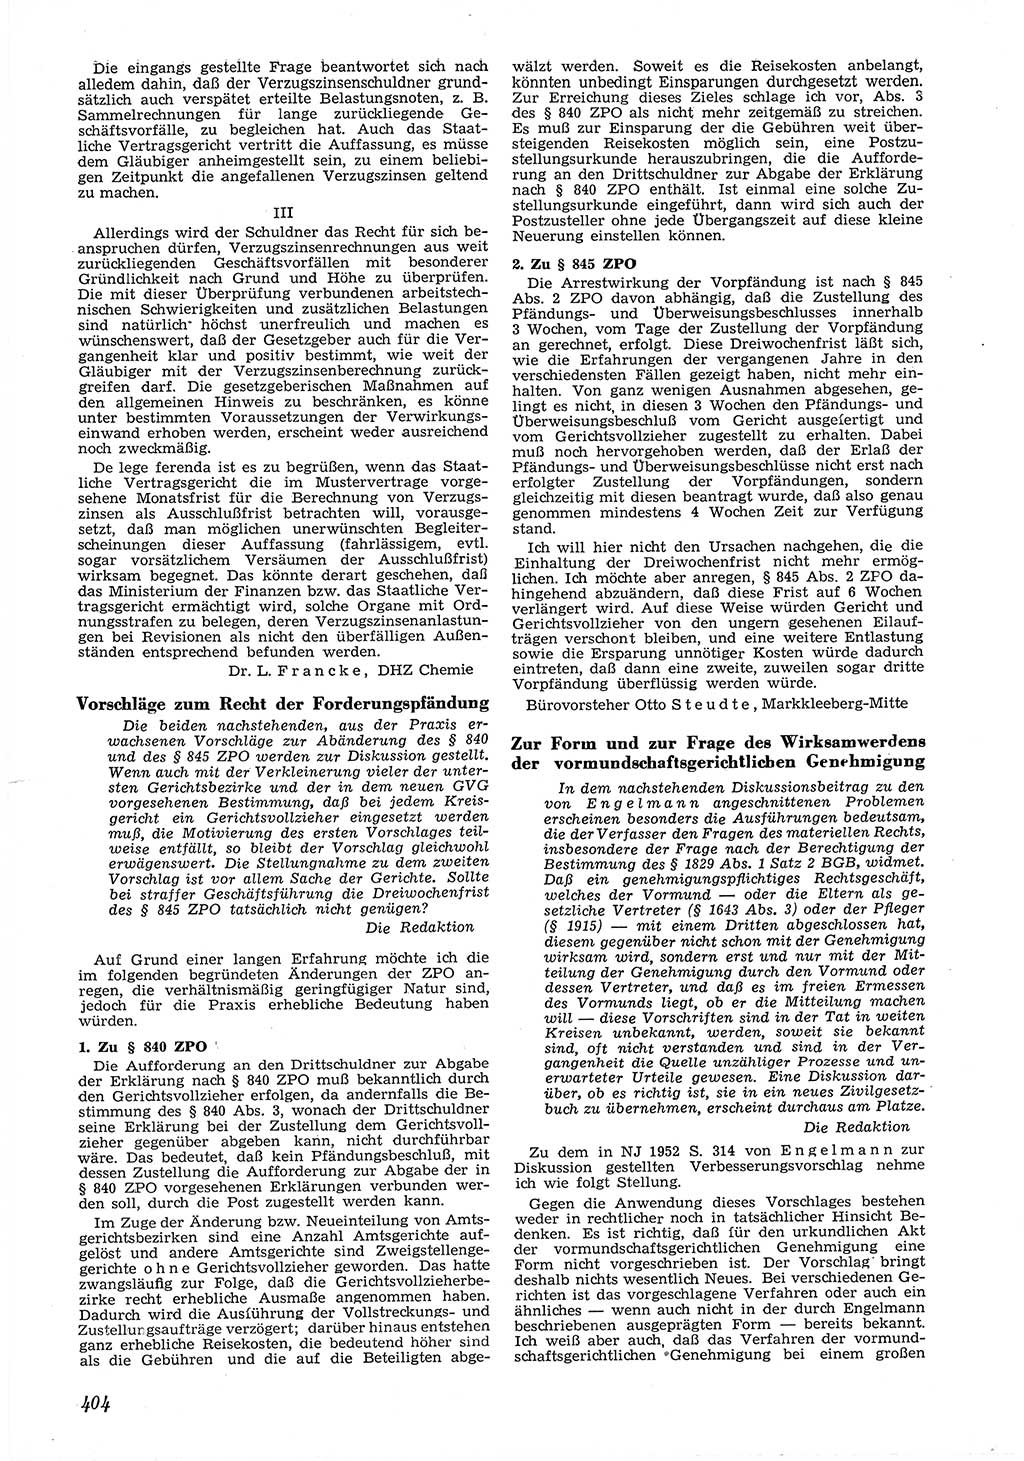 Neue Justiz (NJ), Zeitschrift für Recht und Rechtswissenschaft [Deutsche Demokratische Republik (DDR)], 6. Jahrgang 1952, Seite 404 (NJ DDR 1952, S. 404)